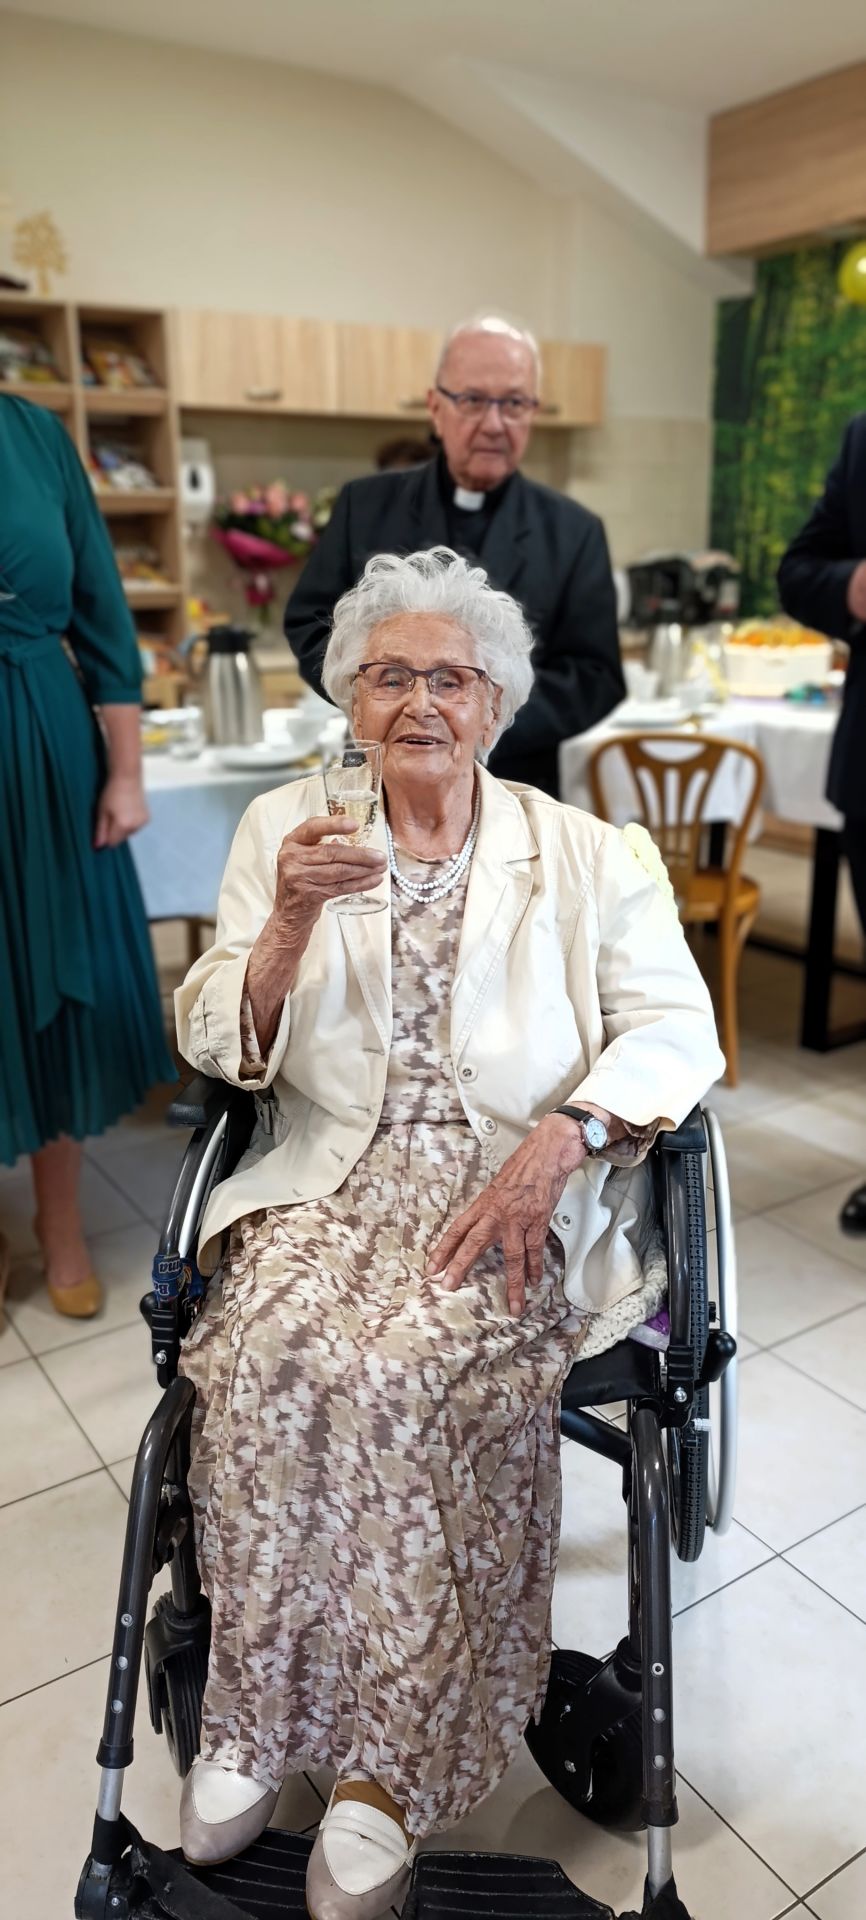 Jubilatka wznosi toast, siedzi na wózku inwalidzkim, ubrana w jasną sukienkę i białą marynarkę